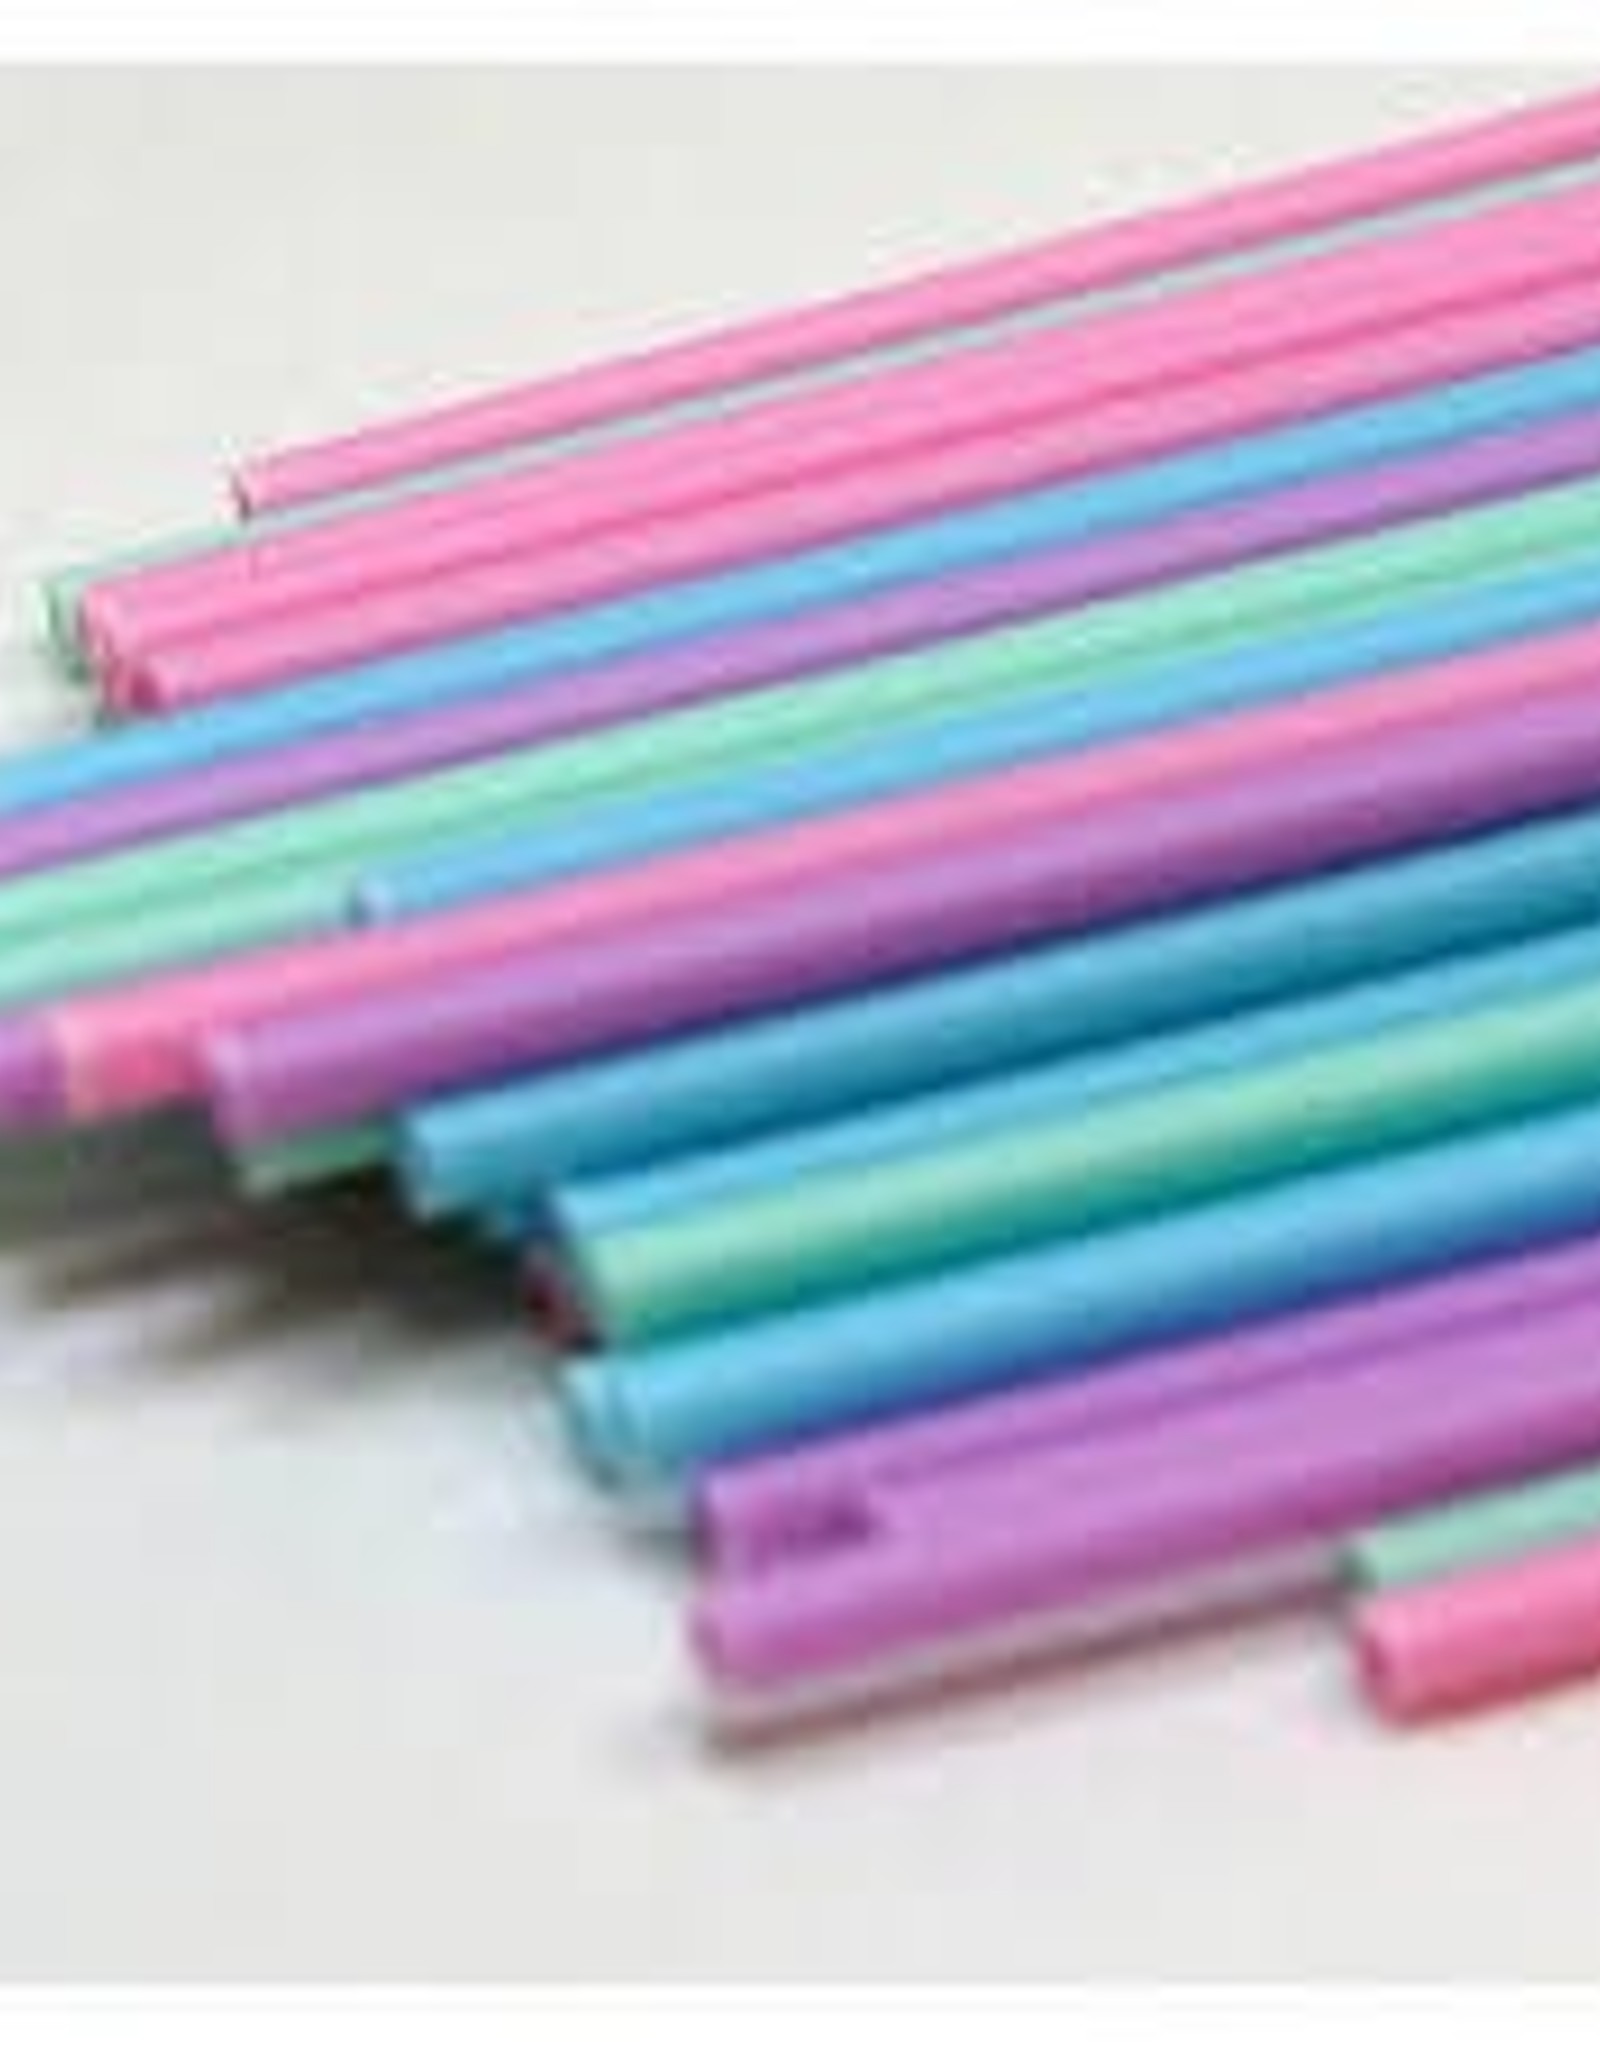 Plastic Sucker Sticks (6" Pastel)50ct